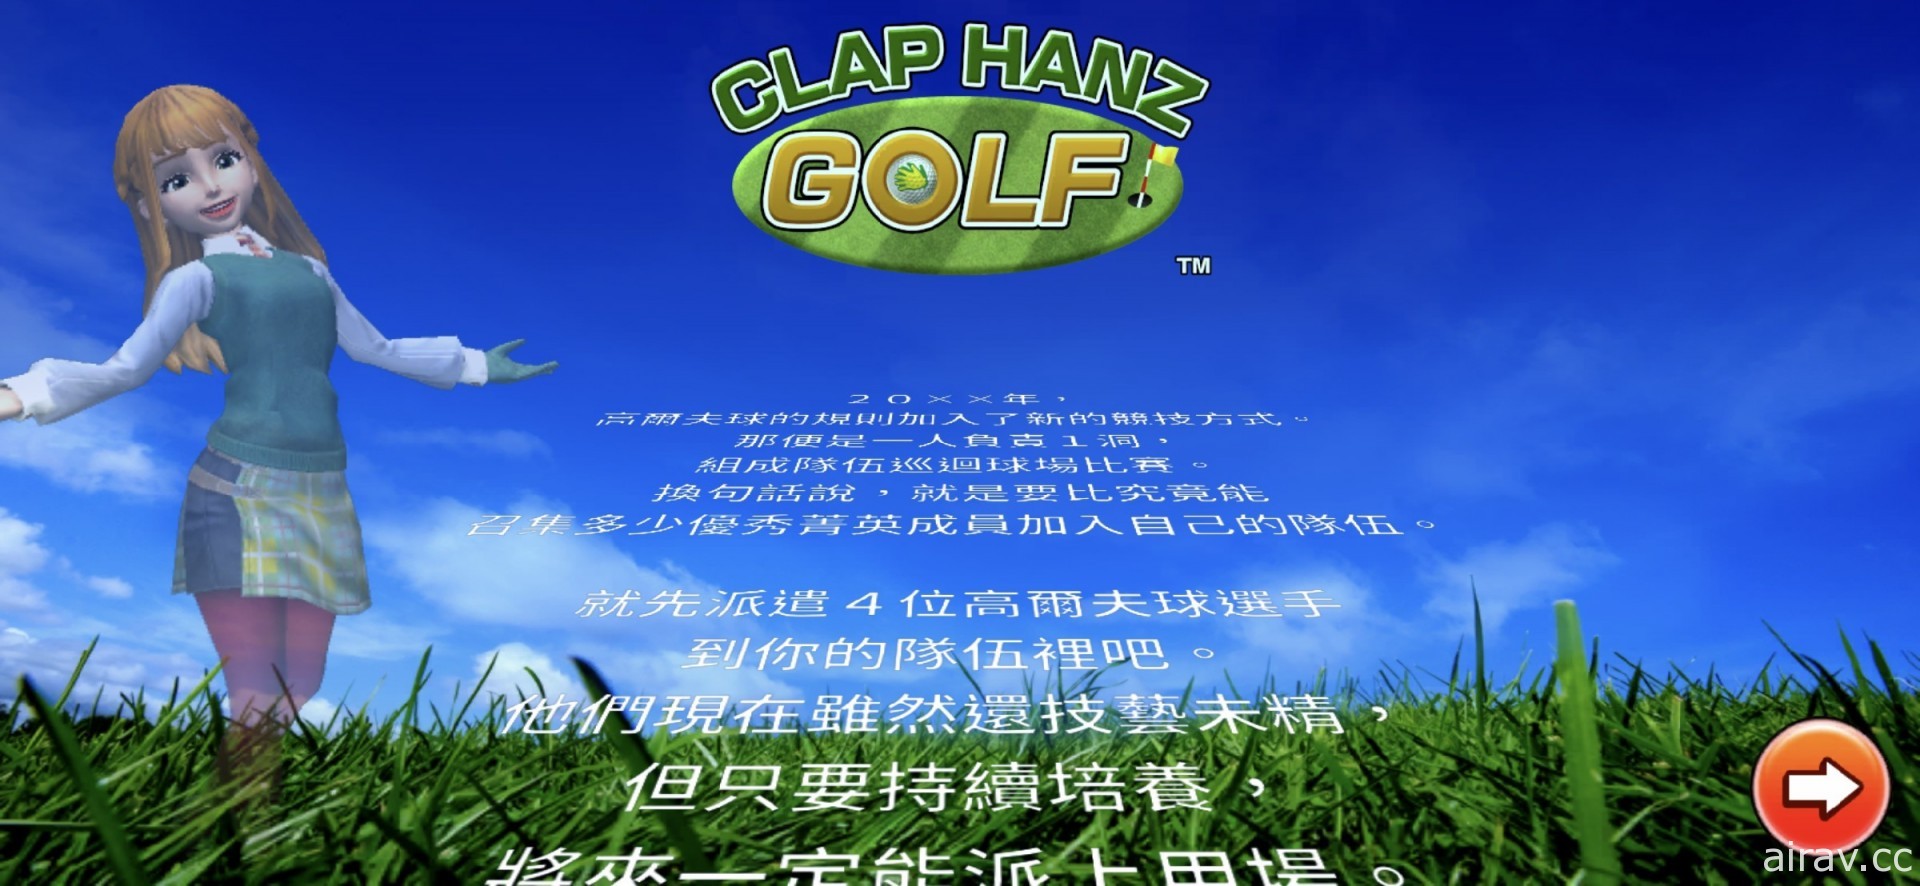 【試玩】《全民高爾夫》團隊打造《CLAP HANZ GOLF》隨時隨地體驗正規高爾夫遊戲